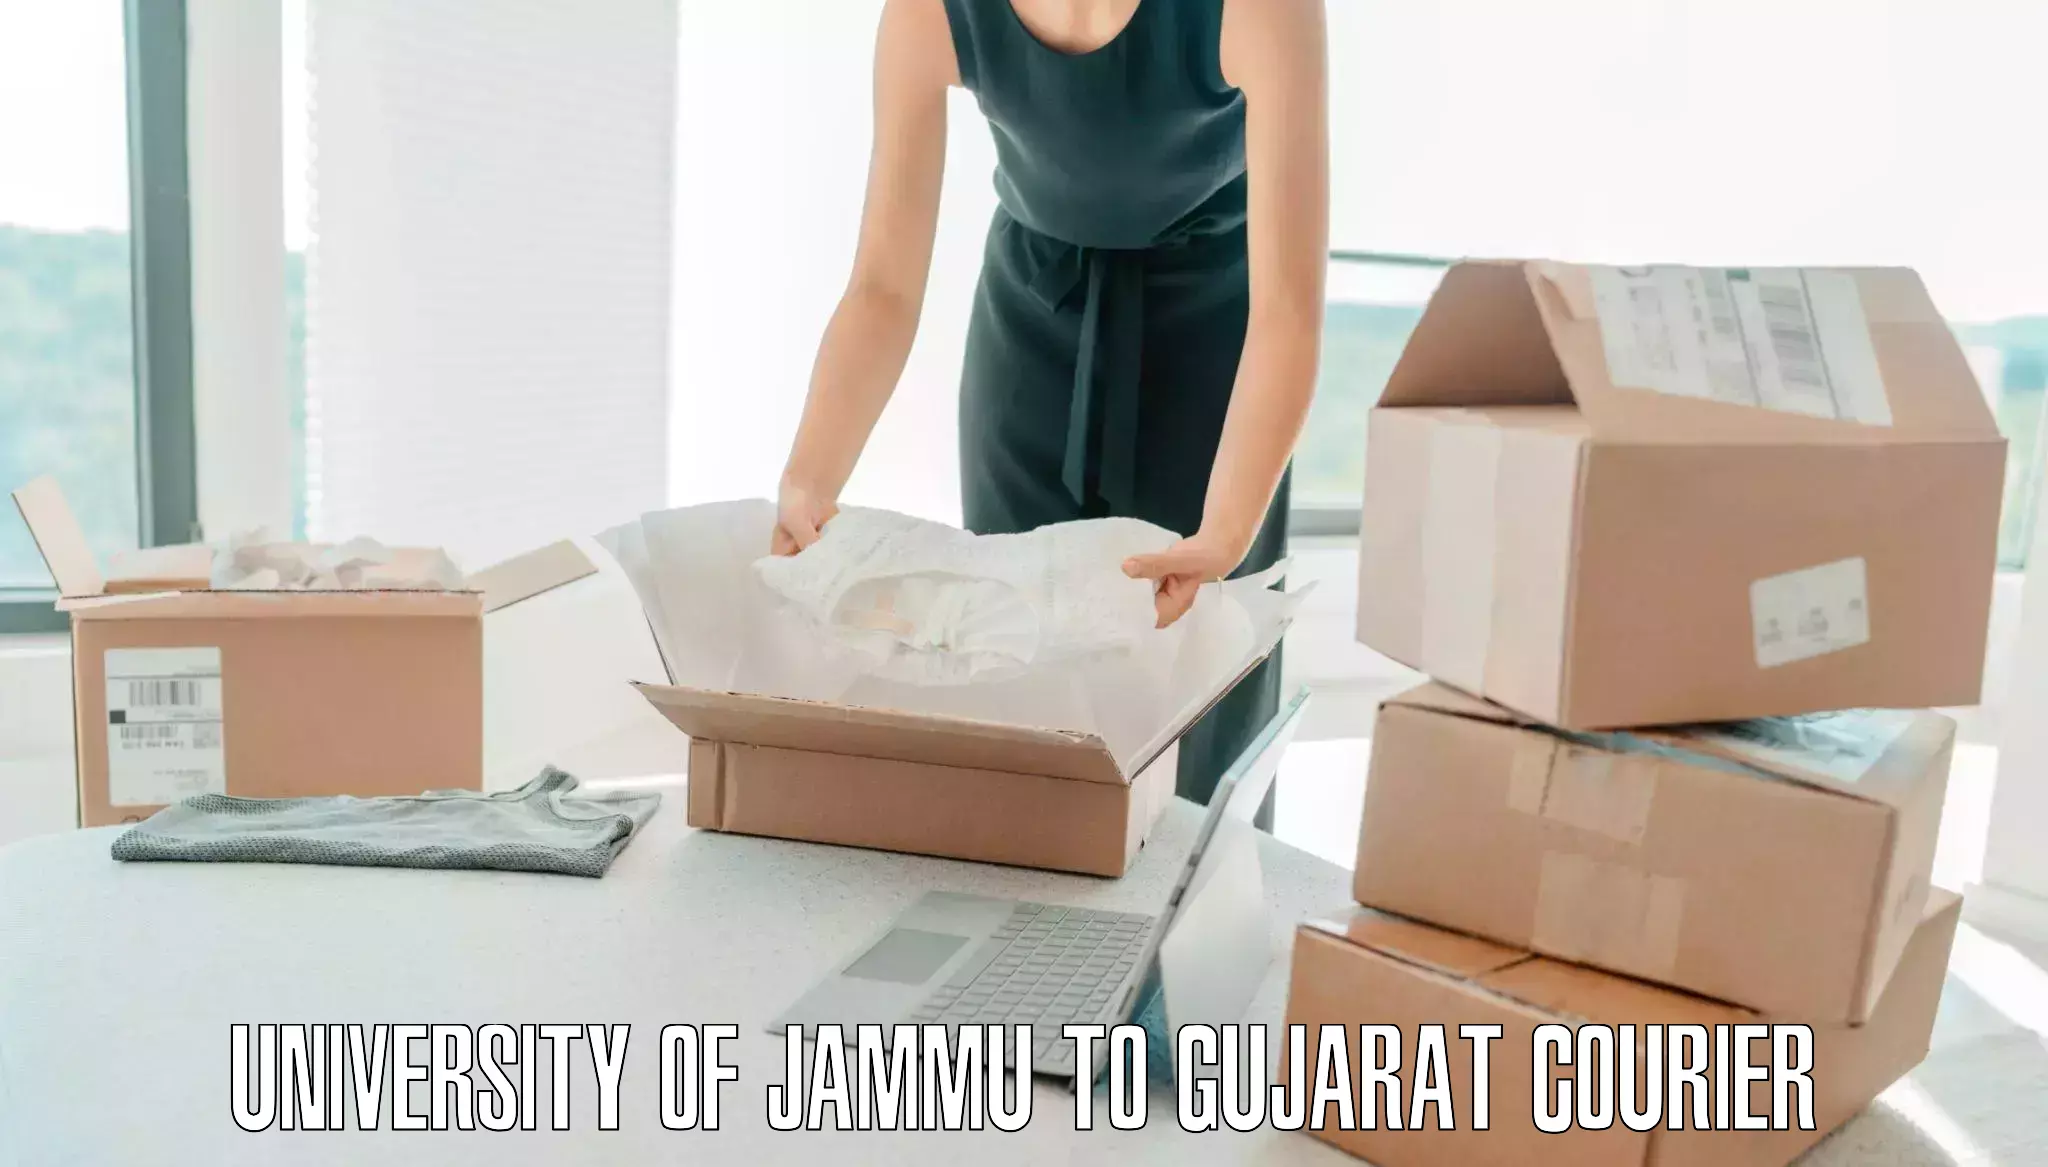 Door-to-door baggage service University of Jammu to Jetpur